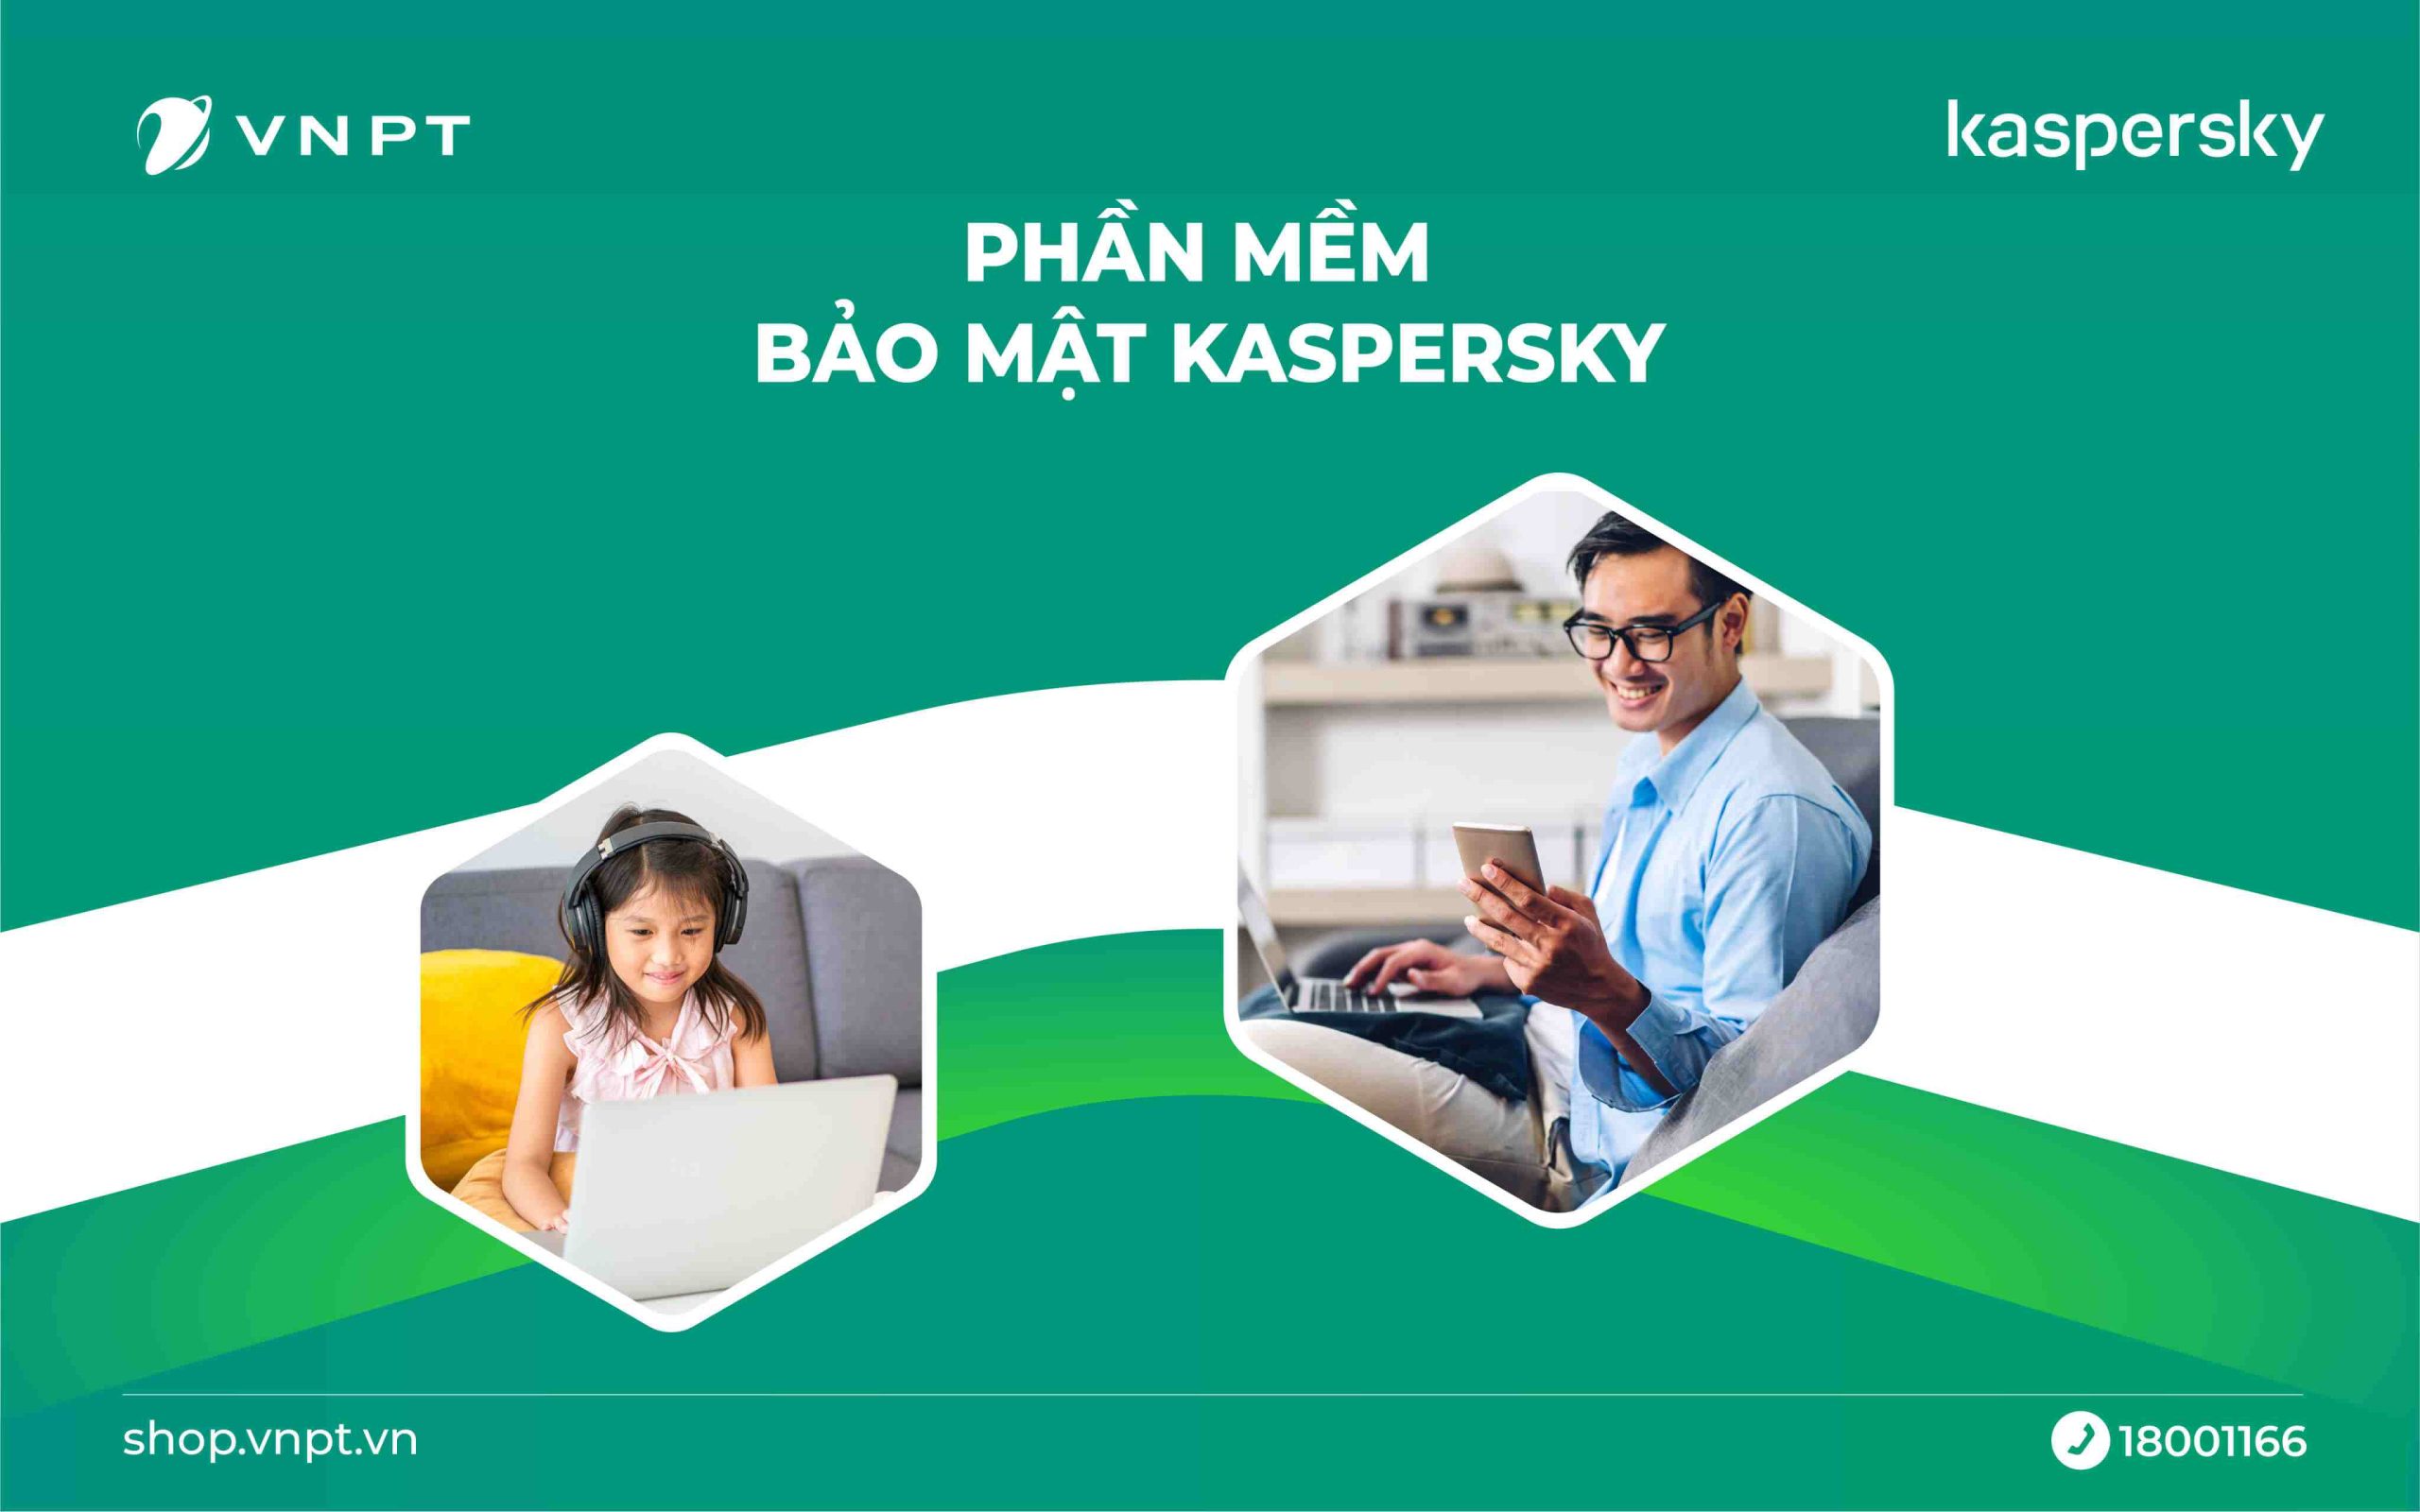 Phần mềm bảo mật Kaspersky VNPT cho gia đình